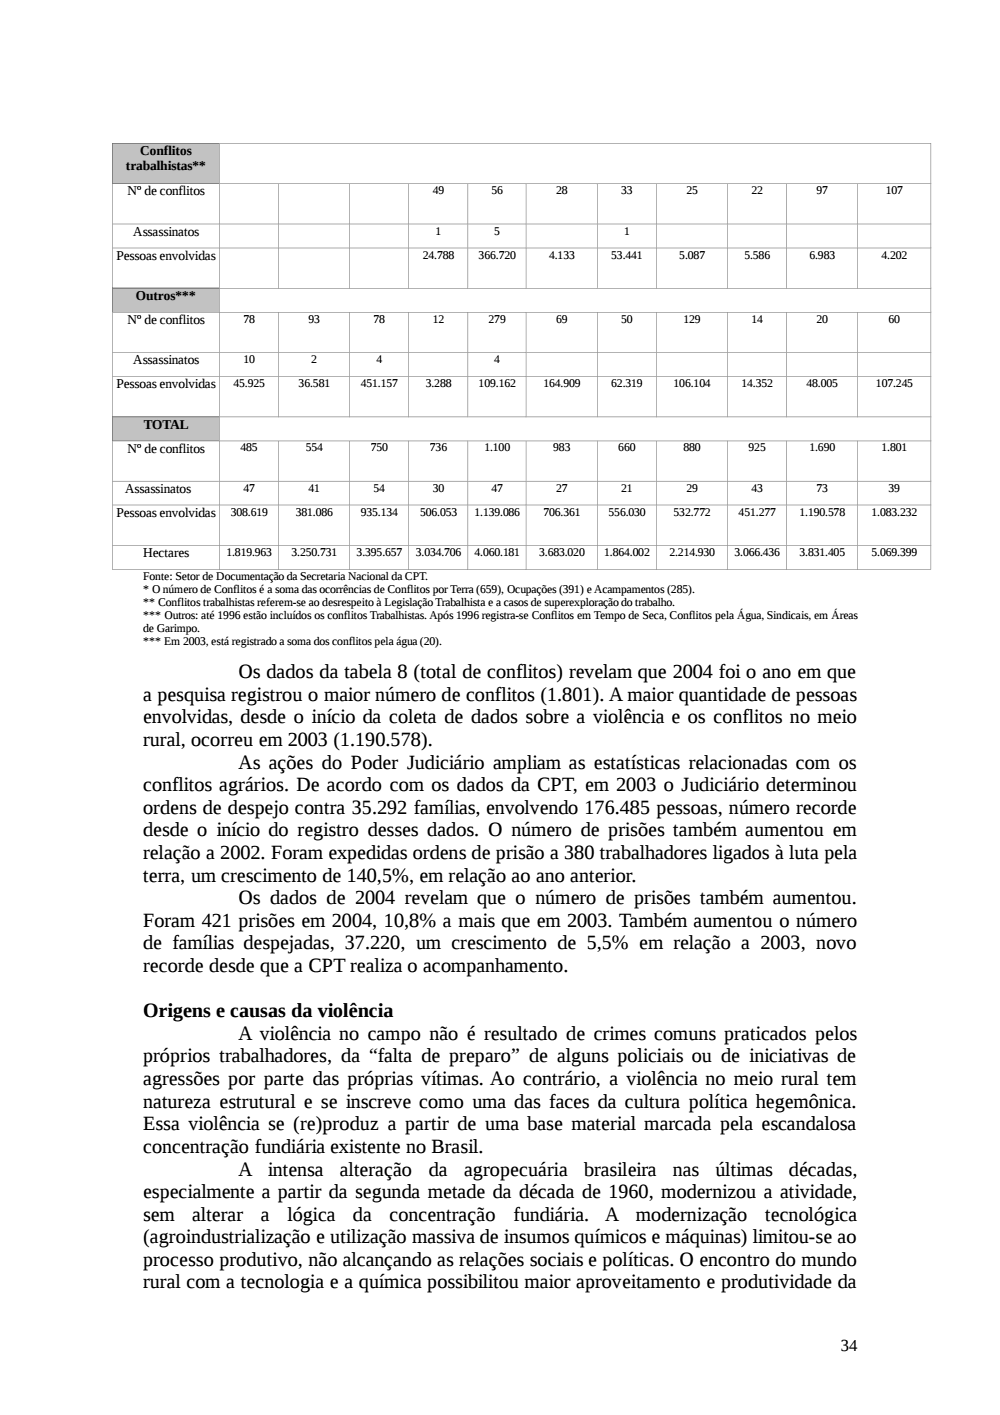 Page 34 from Relatório final da comissão